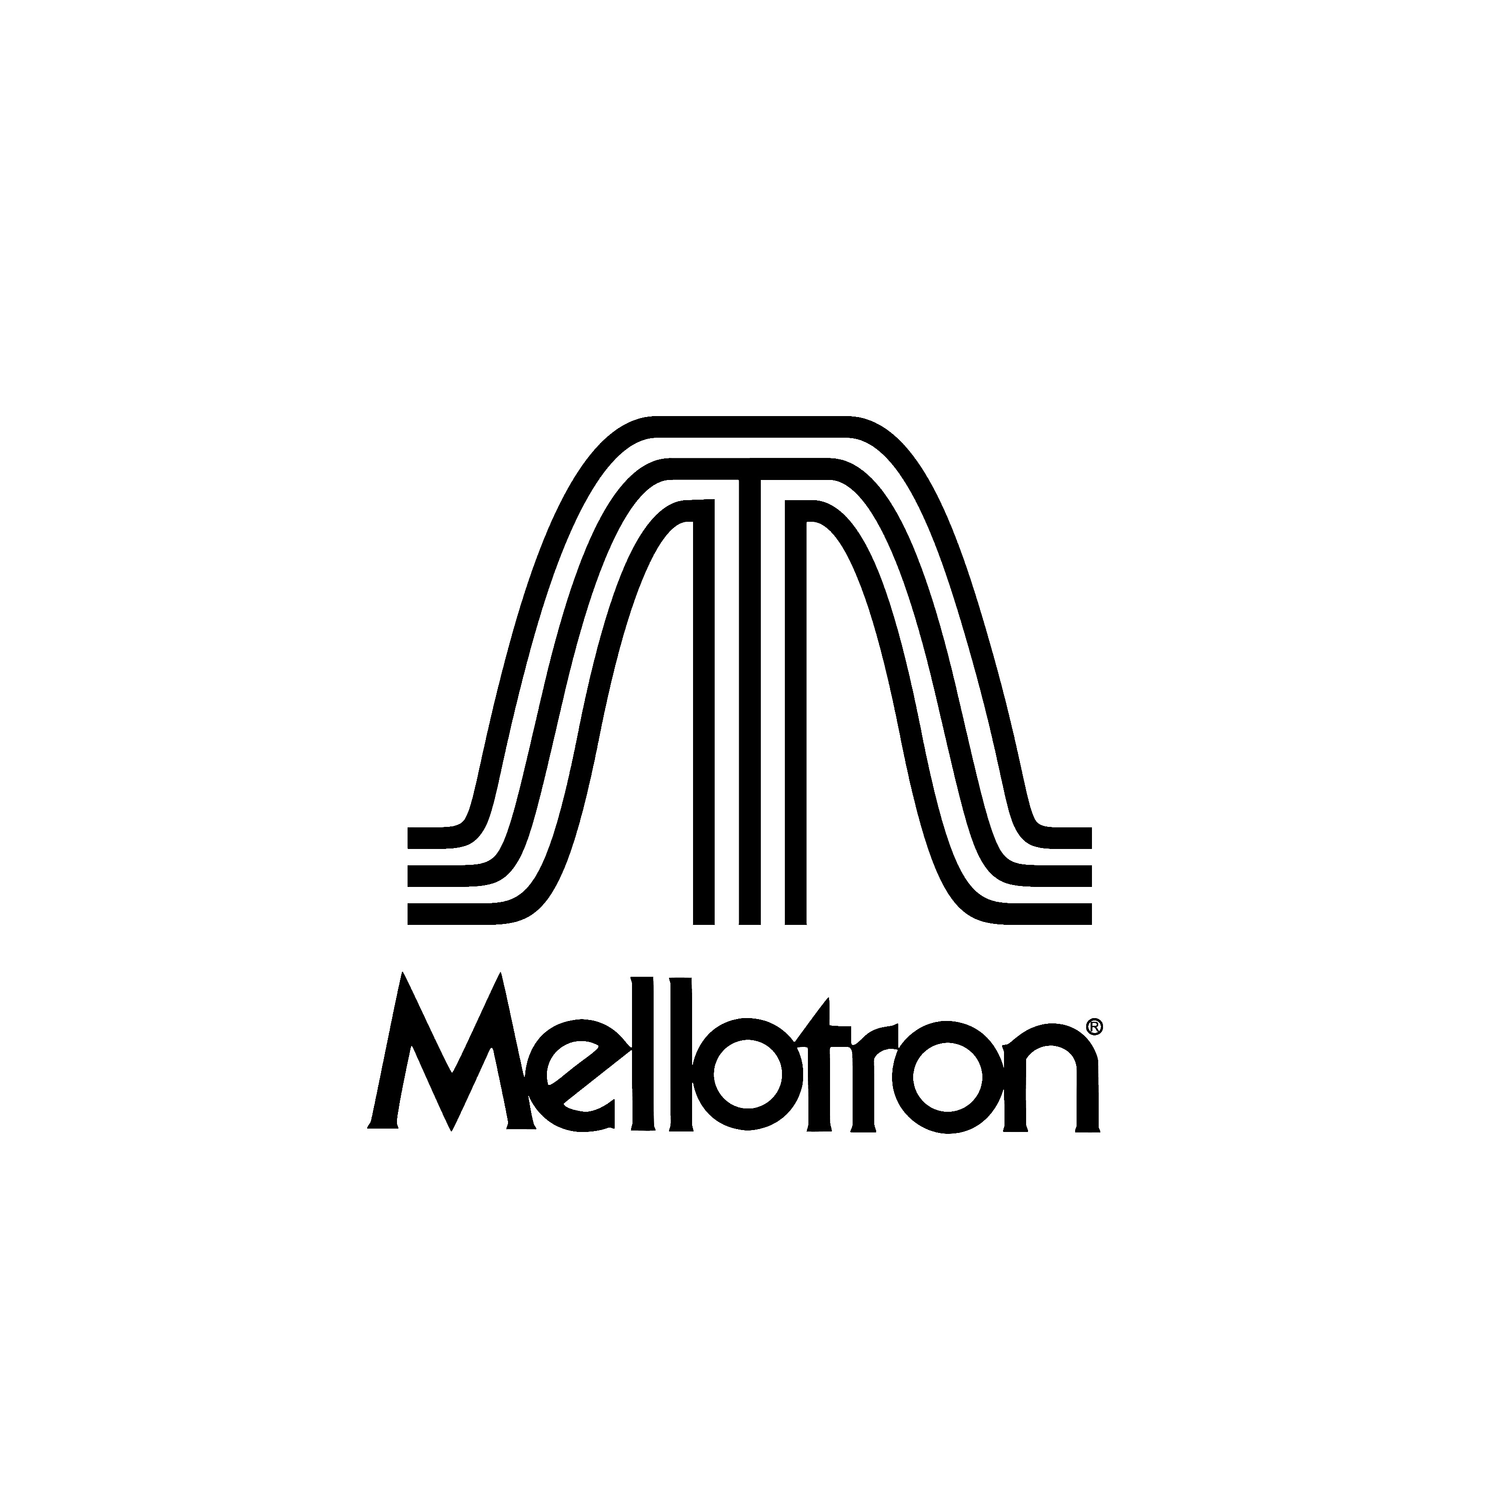 Mellotron